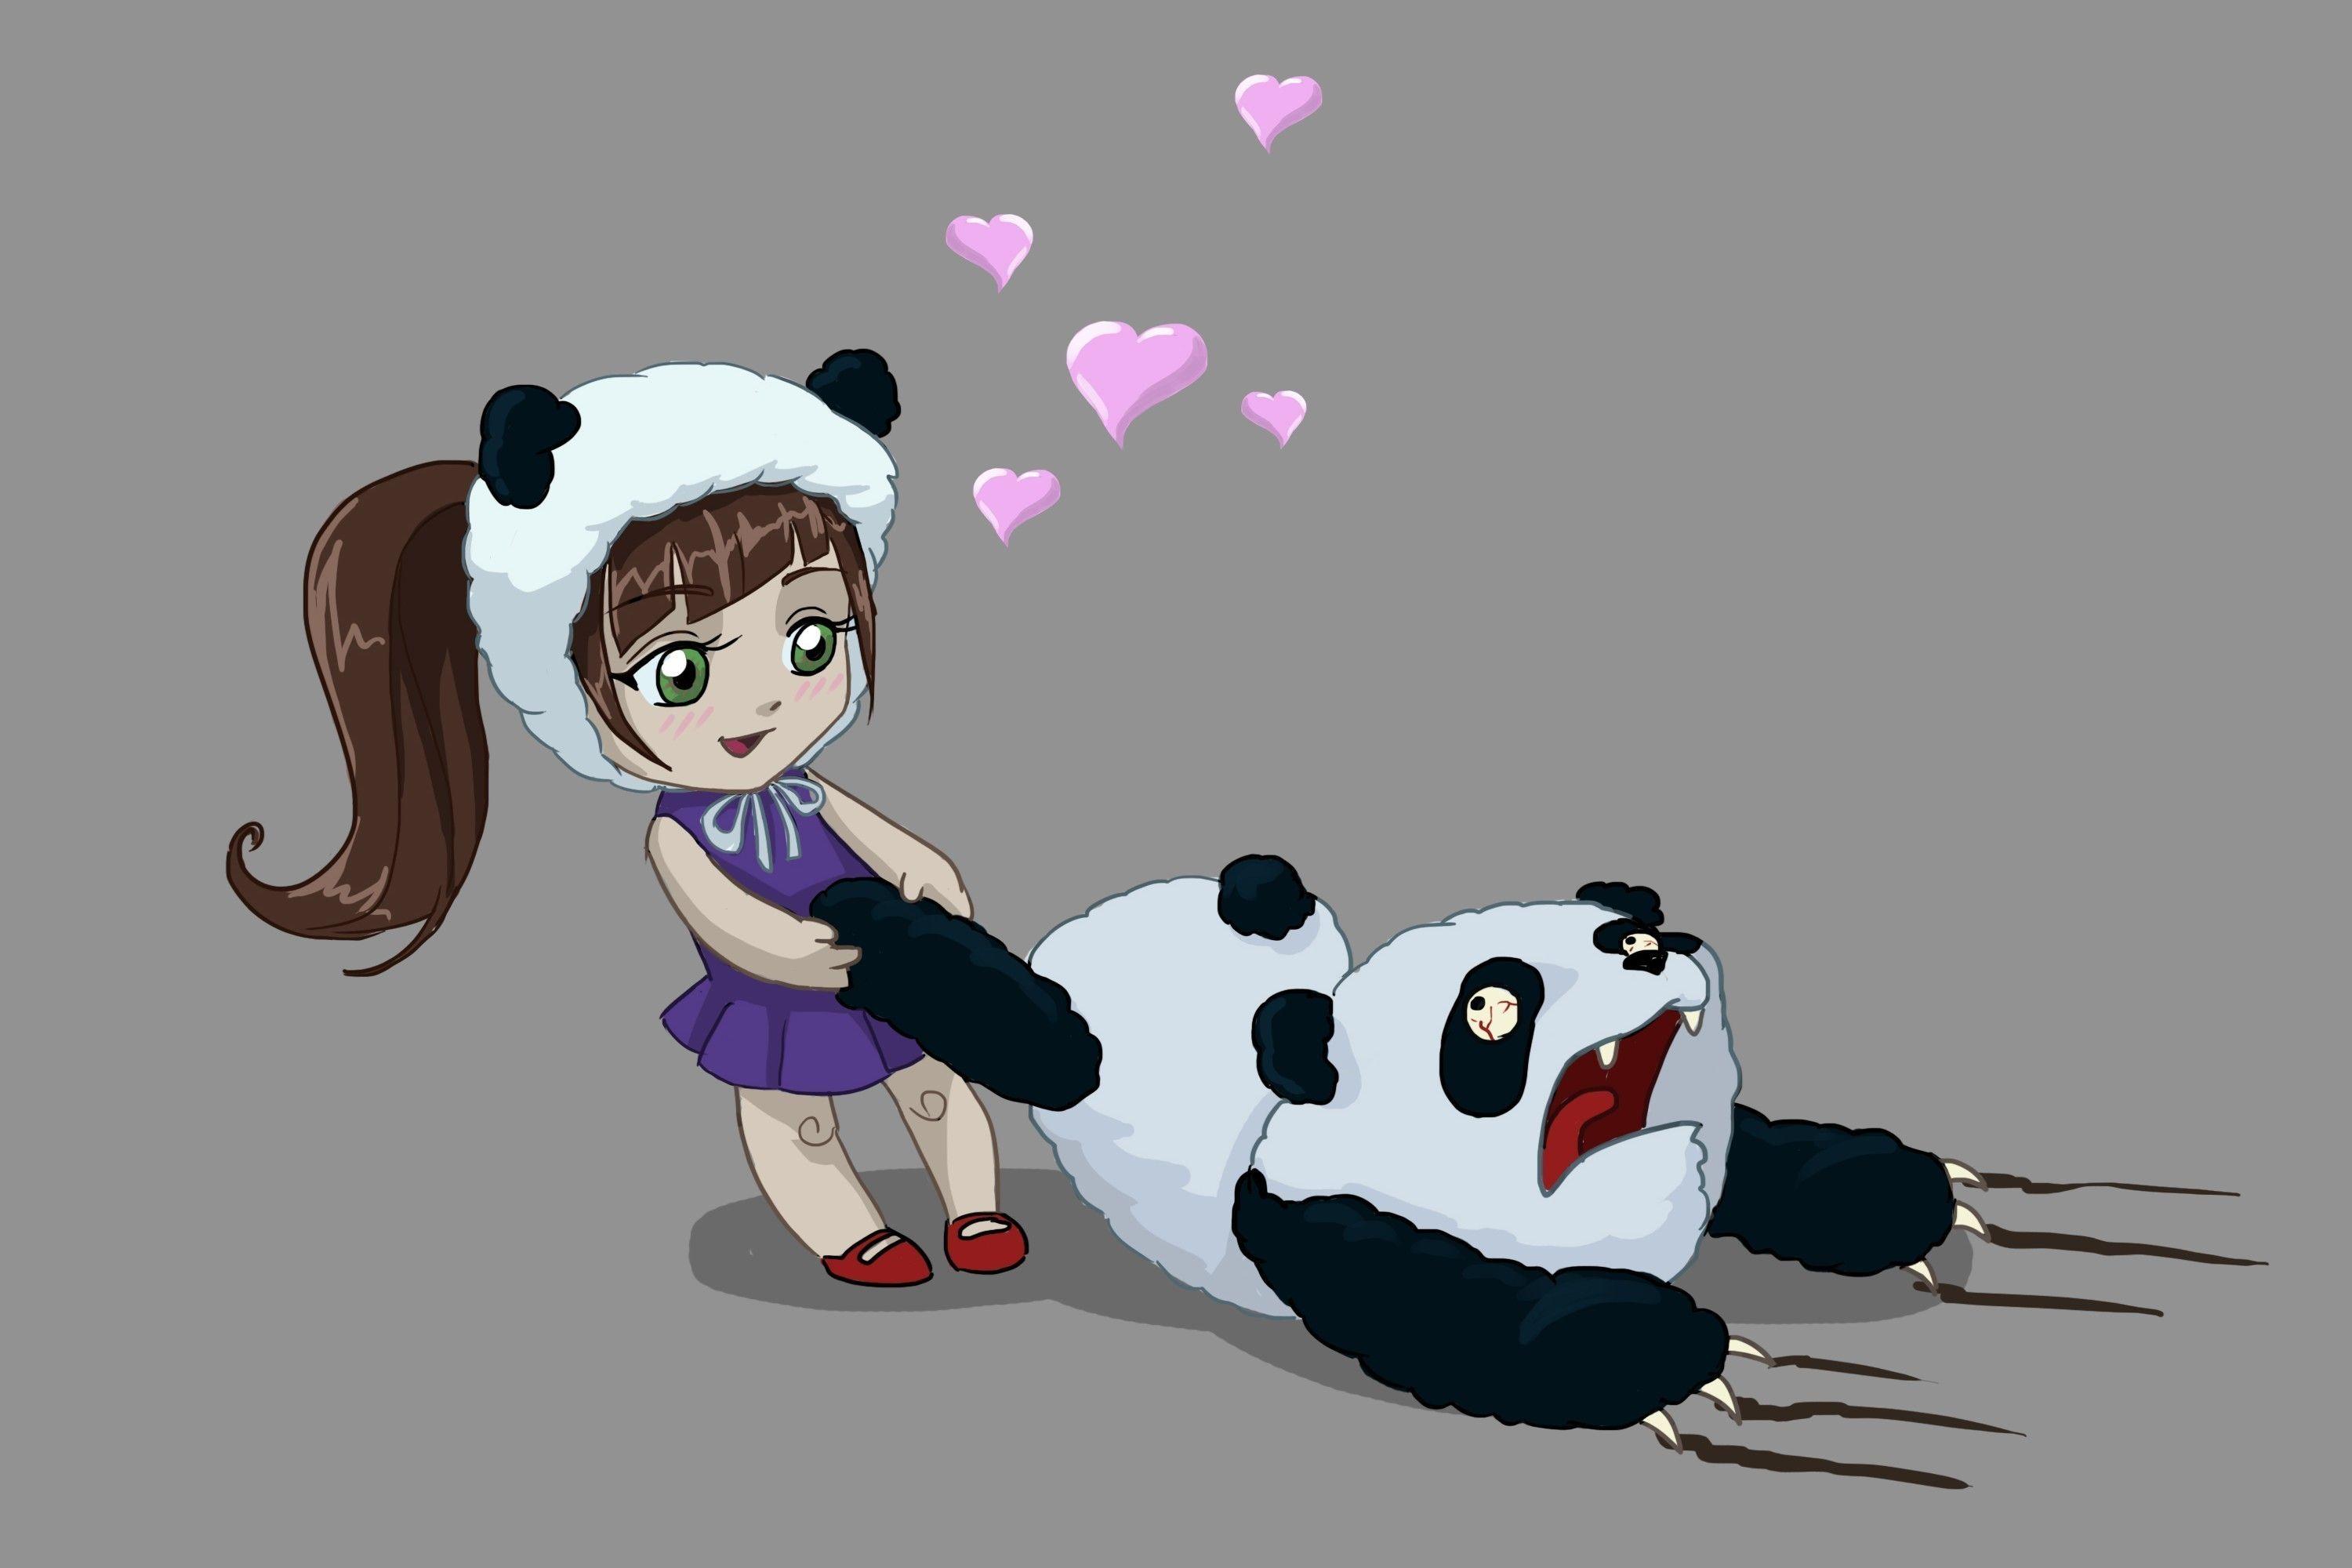 Small Cute Cartoon Panda Wallpapers - Top Free Small Cute Cartoon Panda  Backgrounds - WallpaperAccess